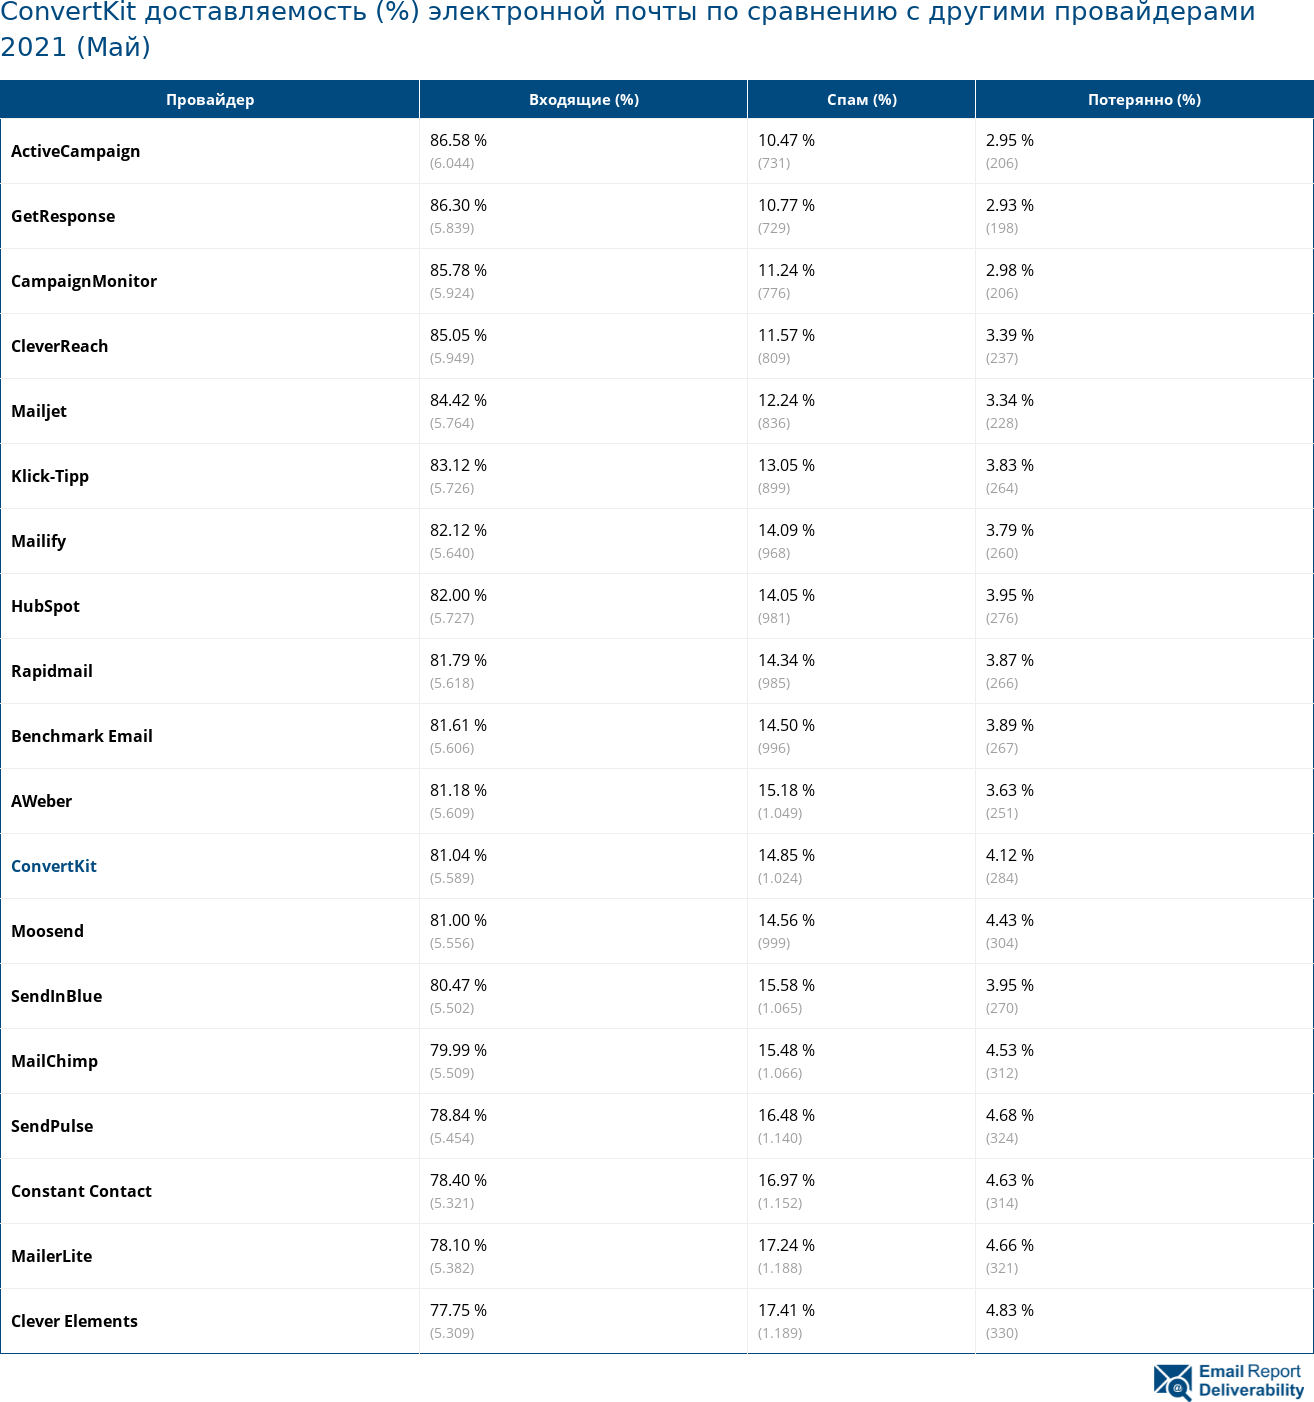 ConvertKit доставляемость (%) электронной почты по сравнению с другими провайдерами 2021 (Май)